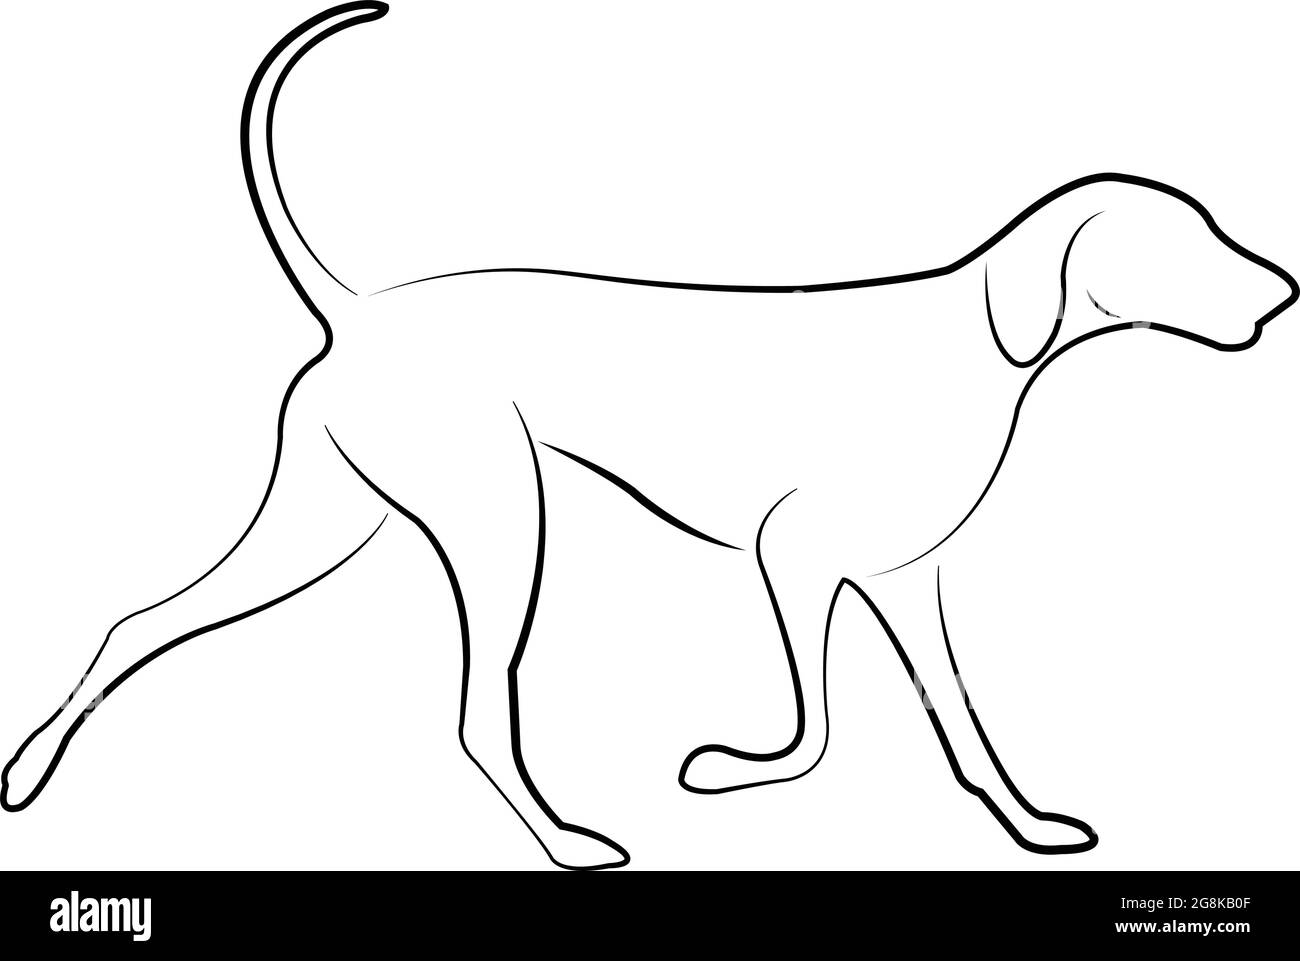 hound dog line art - vettore Illustrazione Vettoriale